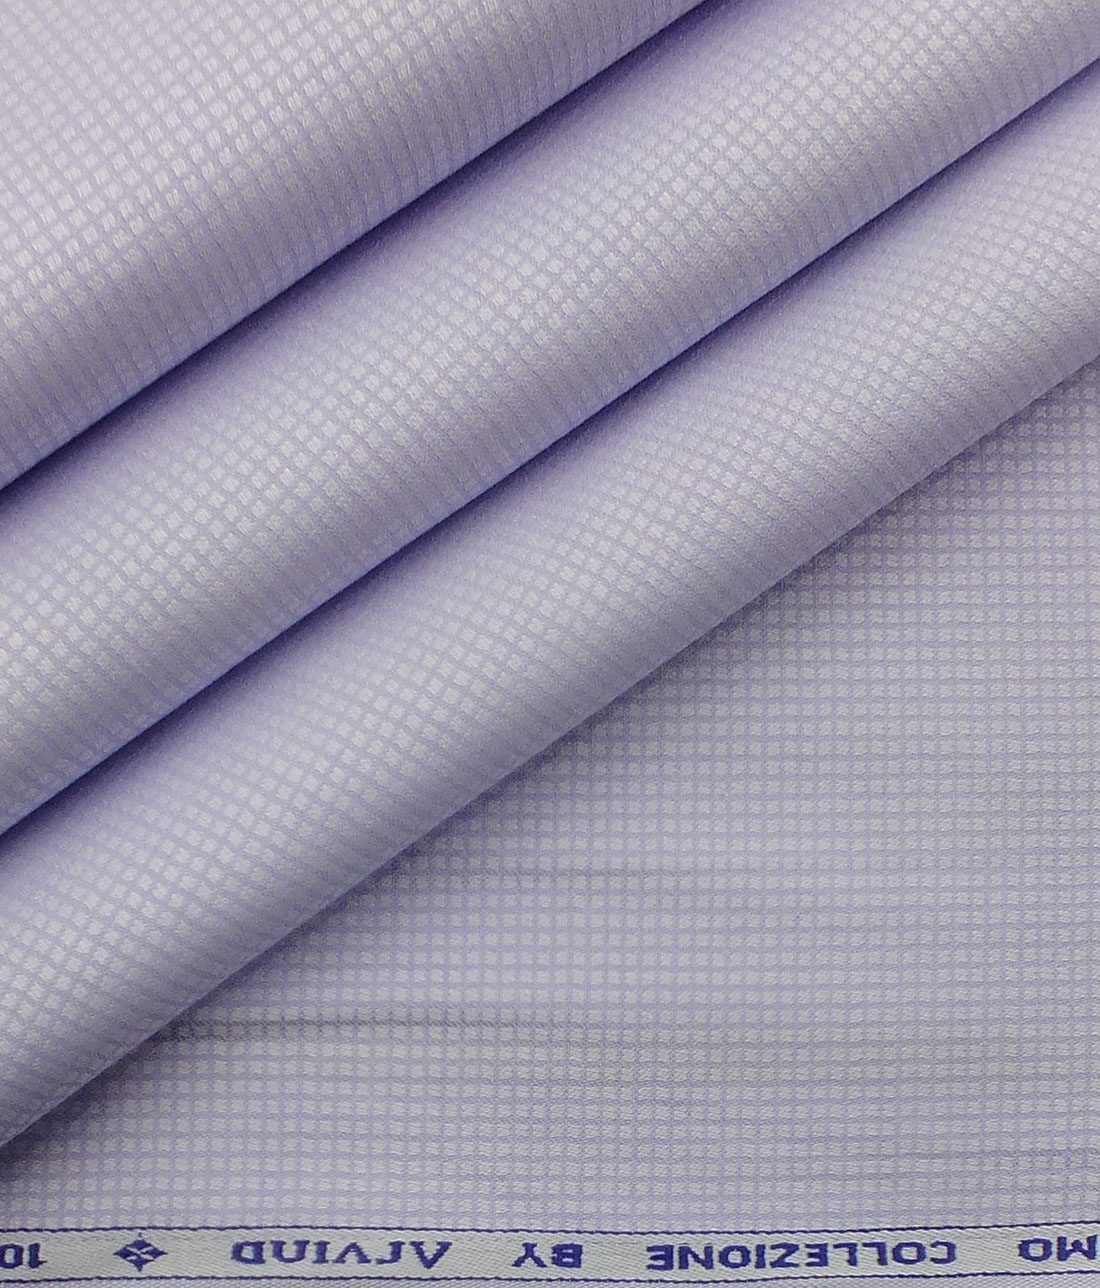 Arvind Men's Light Purple Cotton Royal Oxford Weave Shirt Fabric